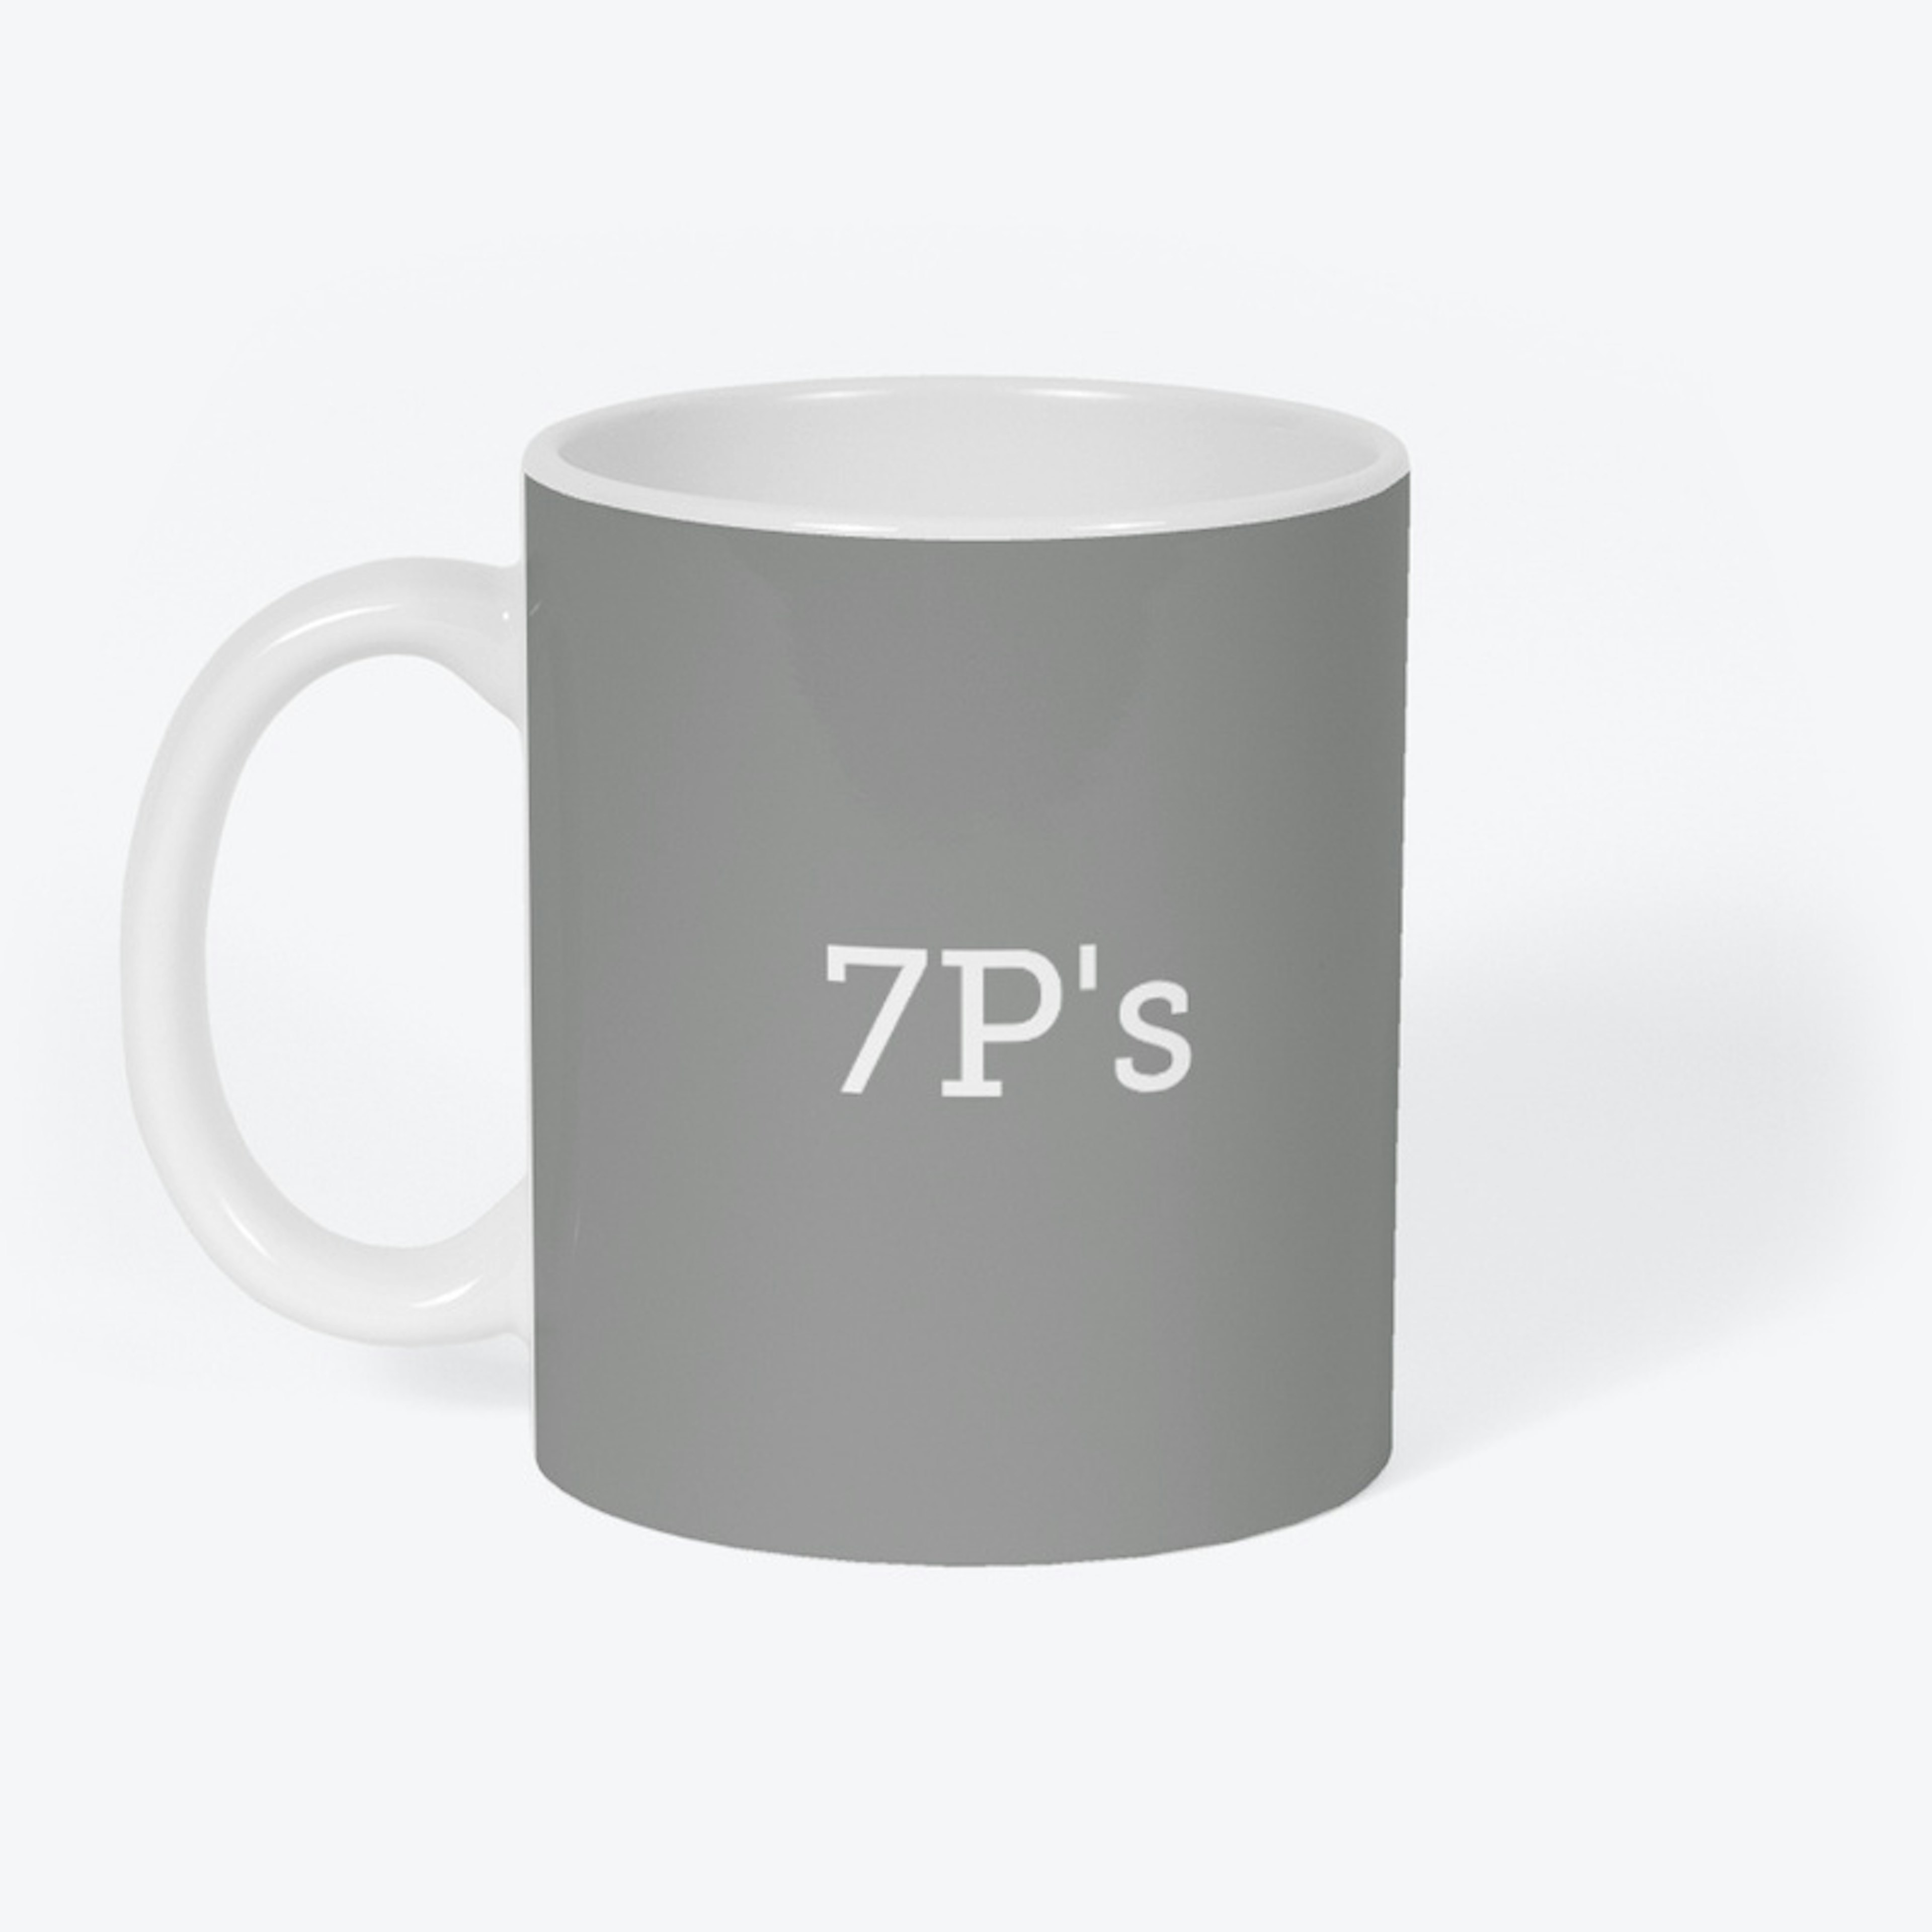 7P's - Proper Prior Planning P P P P